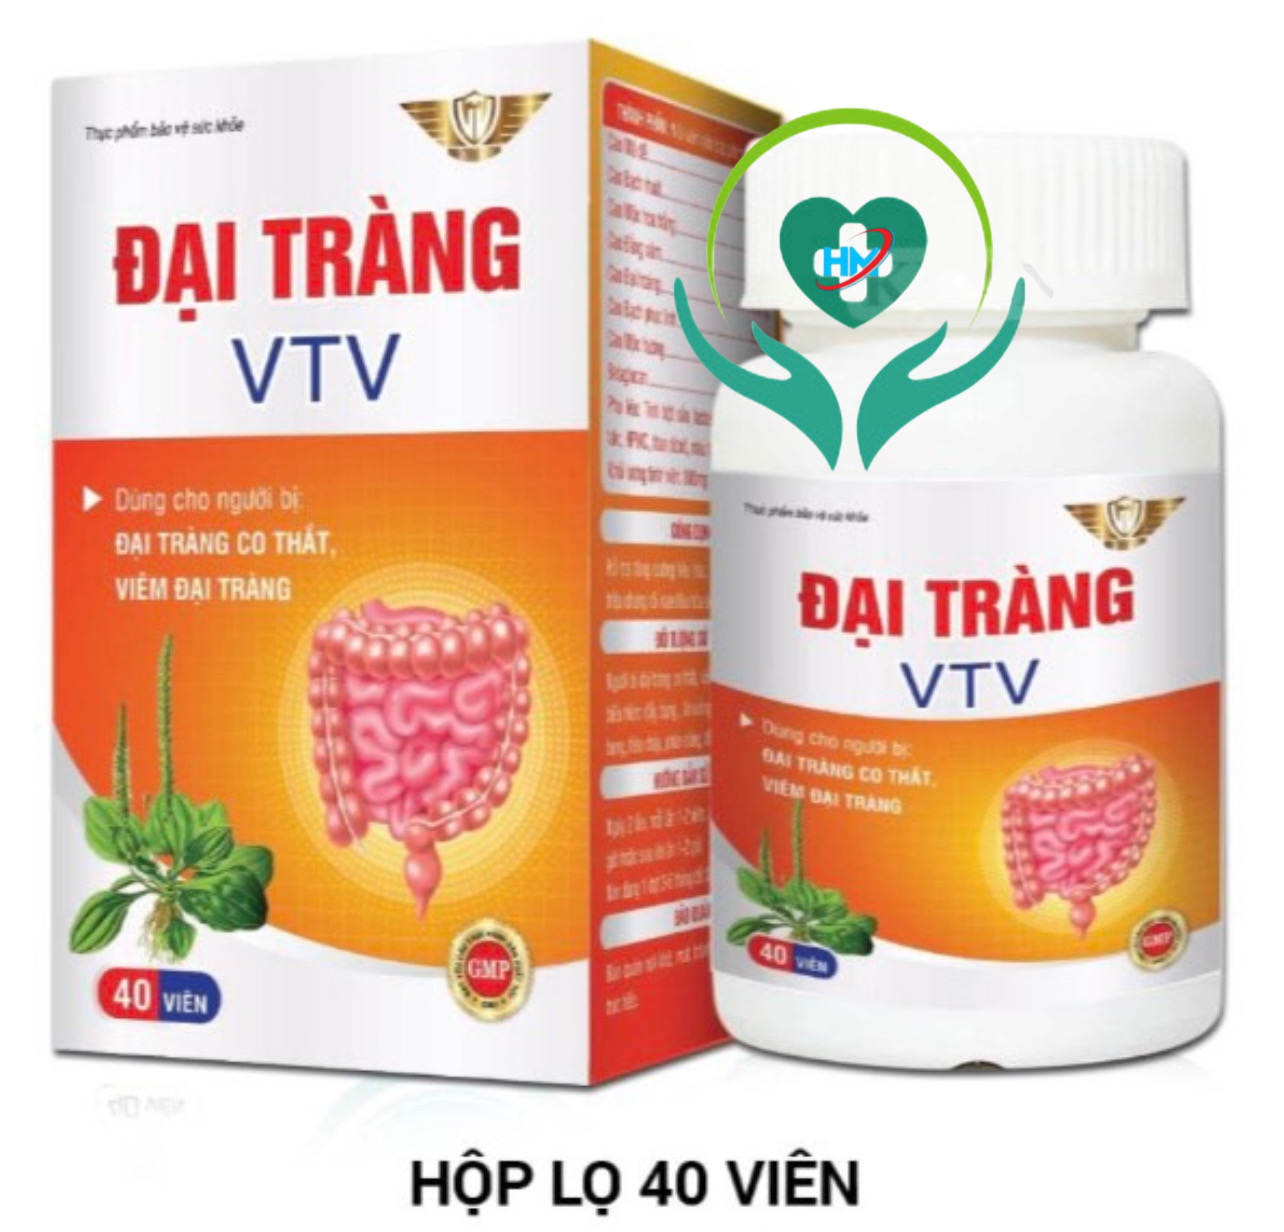 Viên uống Đại tràng VTV Vinh Thịnh Vượng VV, hộp 40v, dùng cho người bị viêm đại tràng cấp, mãn tính